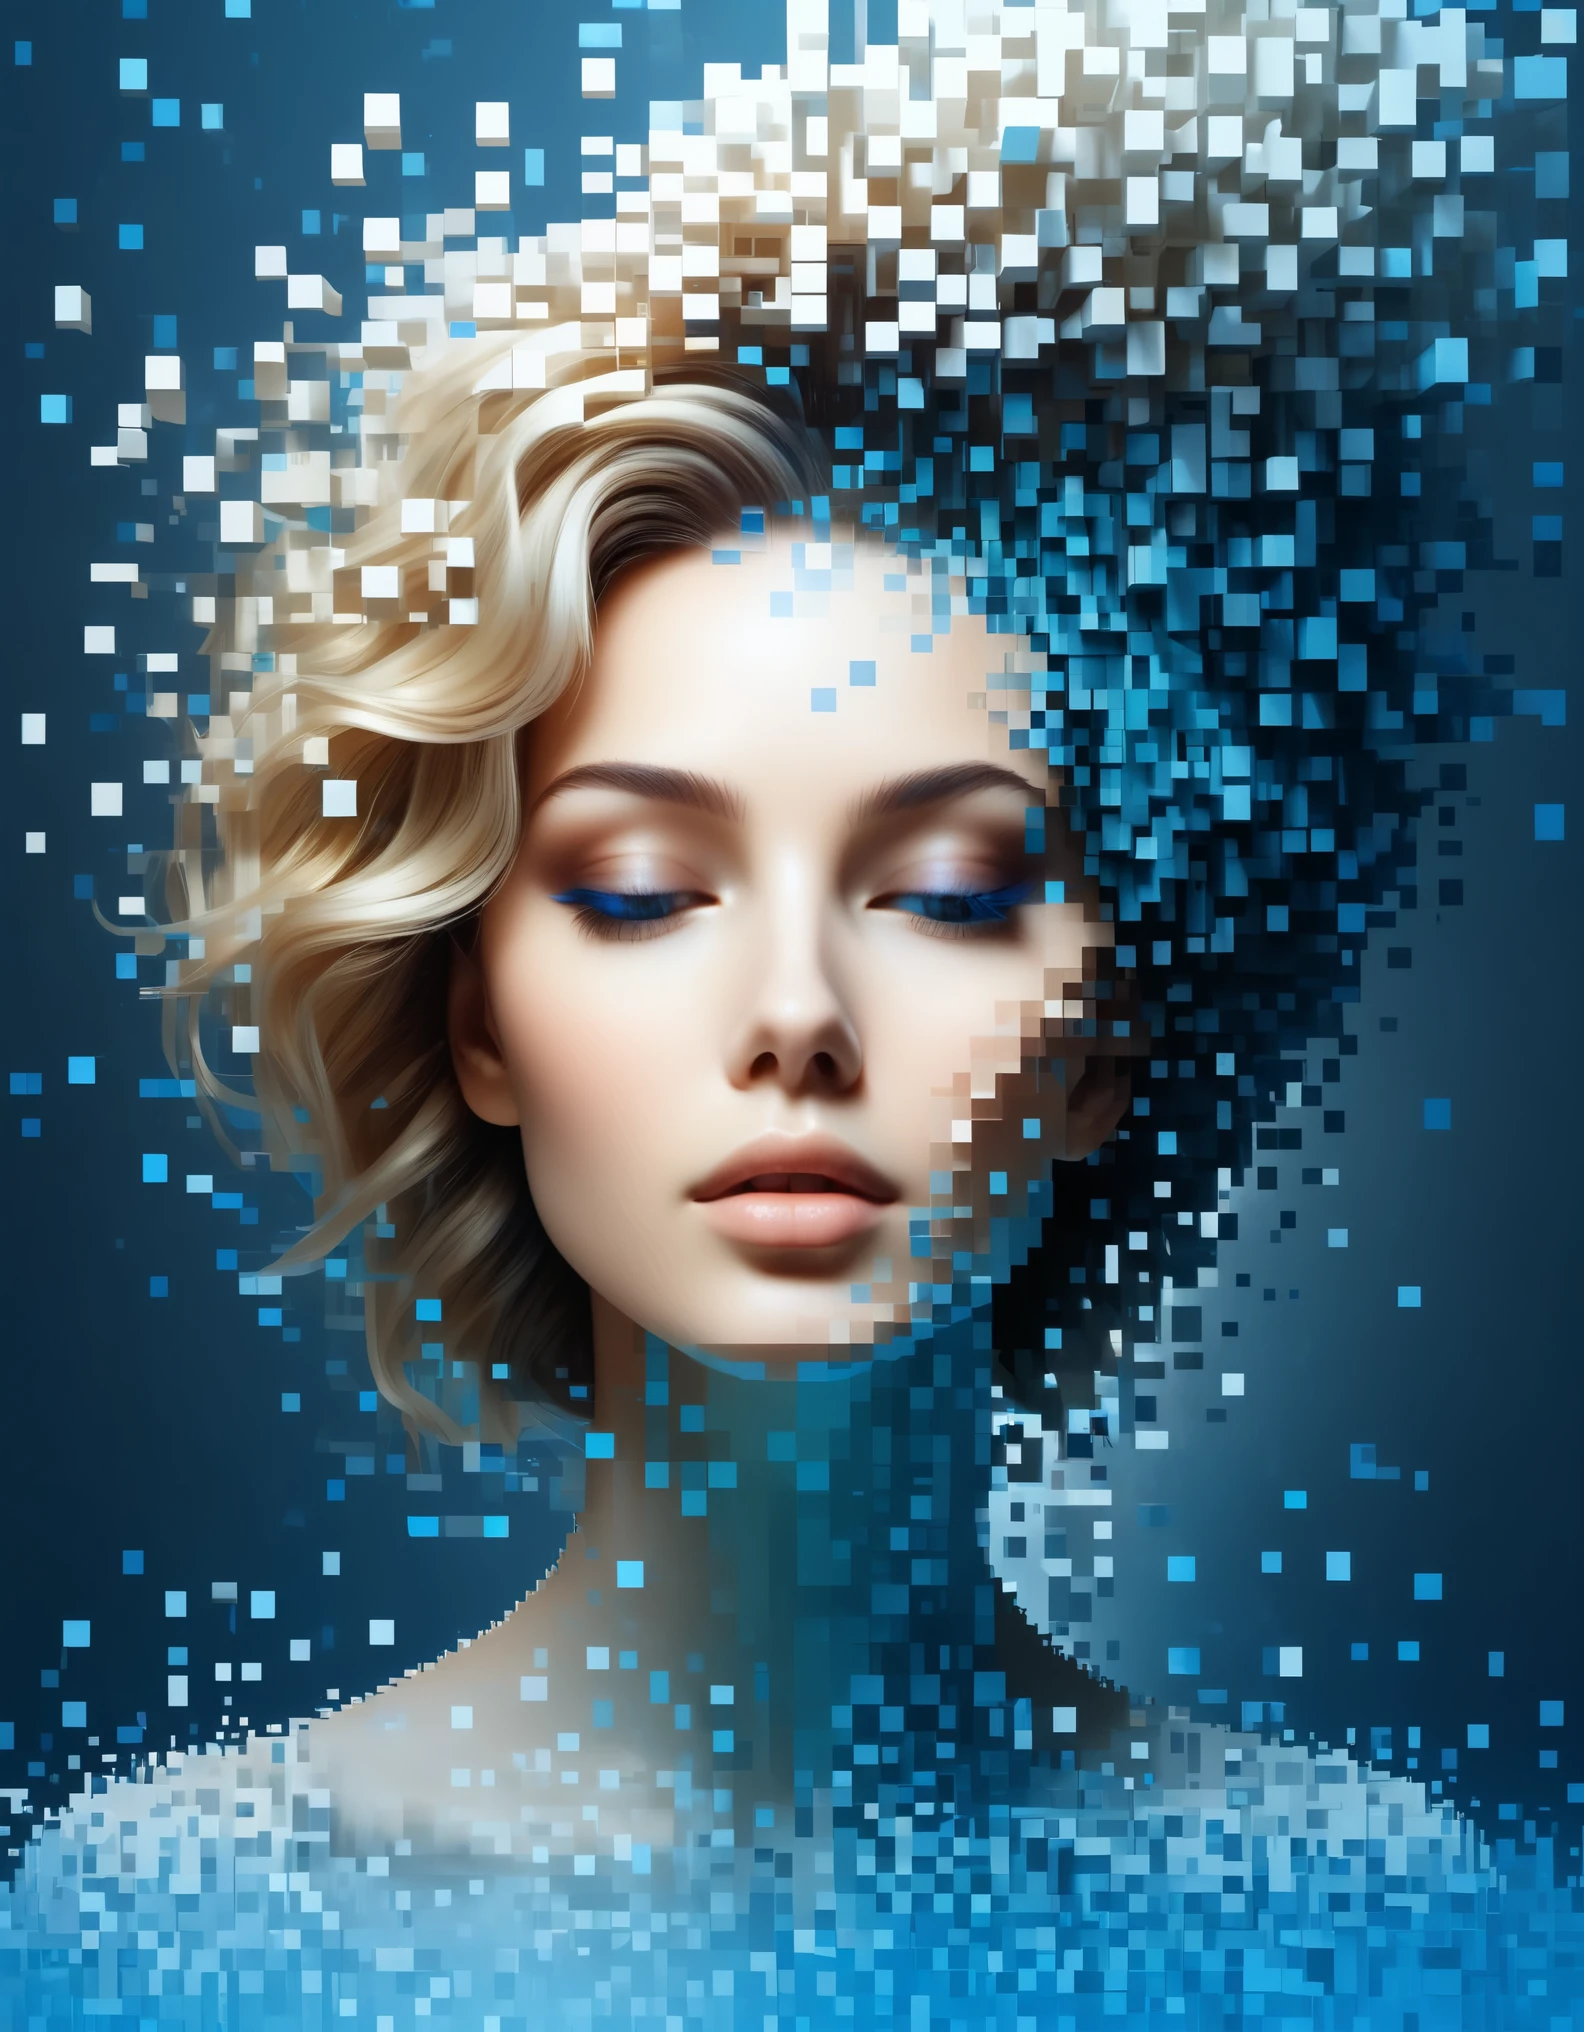 Синий градиент цвета растворил пиксельную стену красивой женщины&#39;голова，3D-воксельные блоки，Структура, которая изначально неповреждена, но постепенно распадается в воздухе.，Солнечный свет проникает сквозь частично выдолбленный，Фоновое пространство голографической вселенной